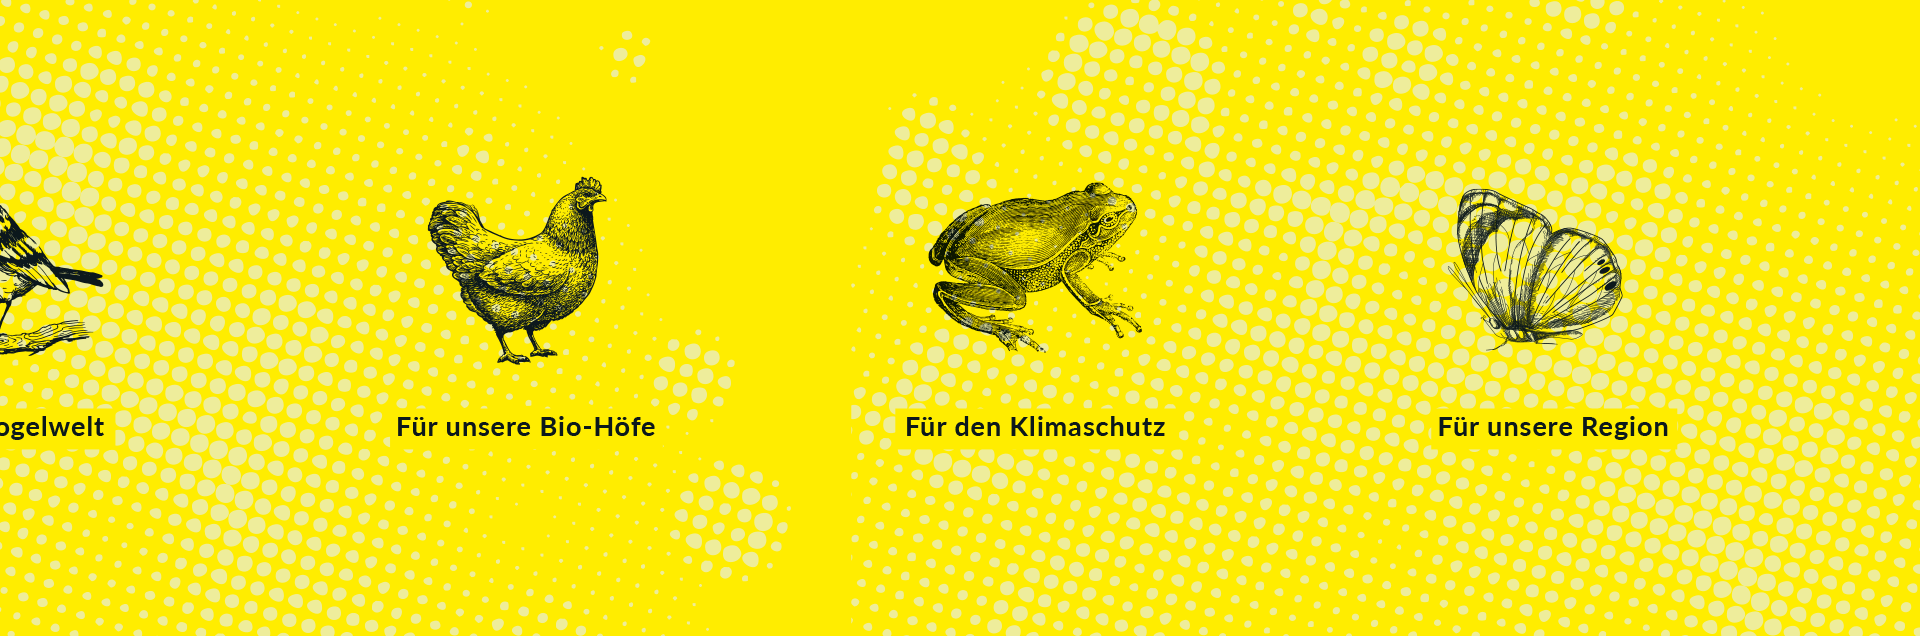 schwarz-weiß Illustrationen von verschiedenen Kleintieren aus dem Miniwildnis Projekt mit einem kurzen Satz drunter, liegen auf einem gelben Hintergrund. Zu sehen Huhn, Frosch, Schmetterling